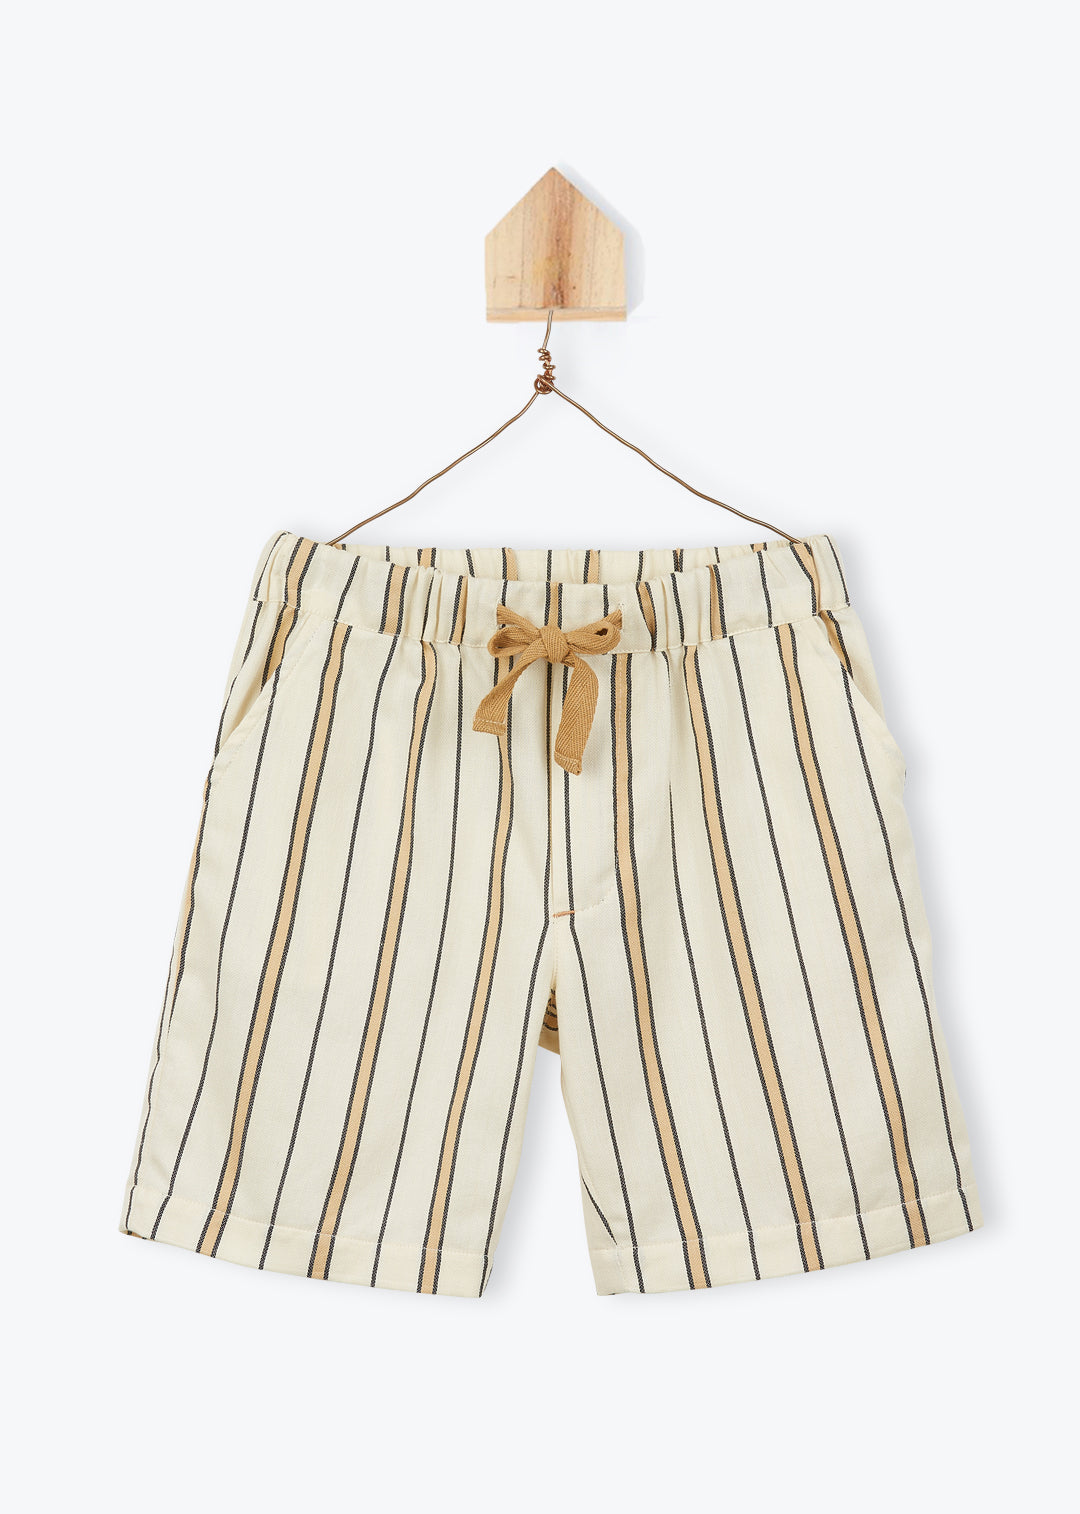 Shorts Boy Beige Striped - قميص